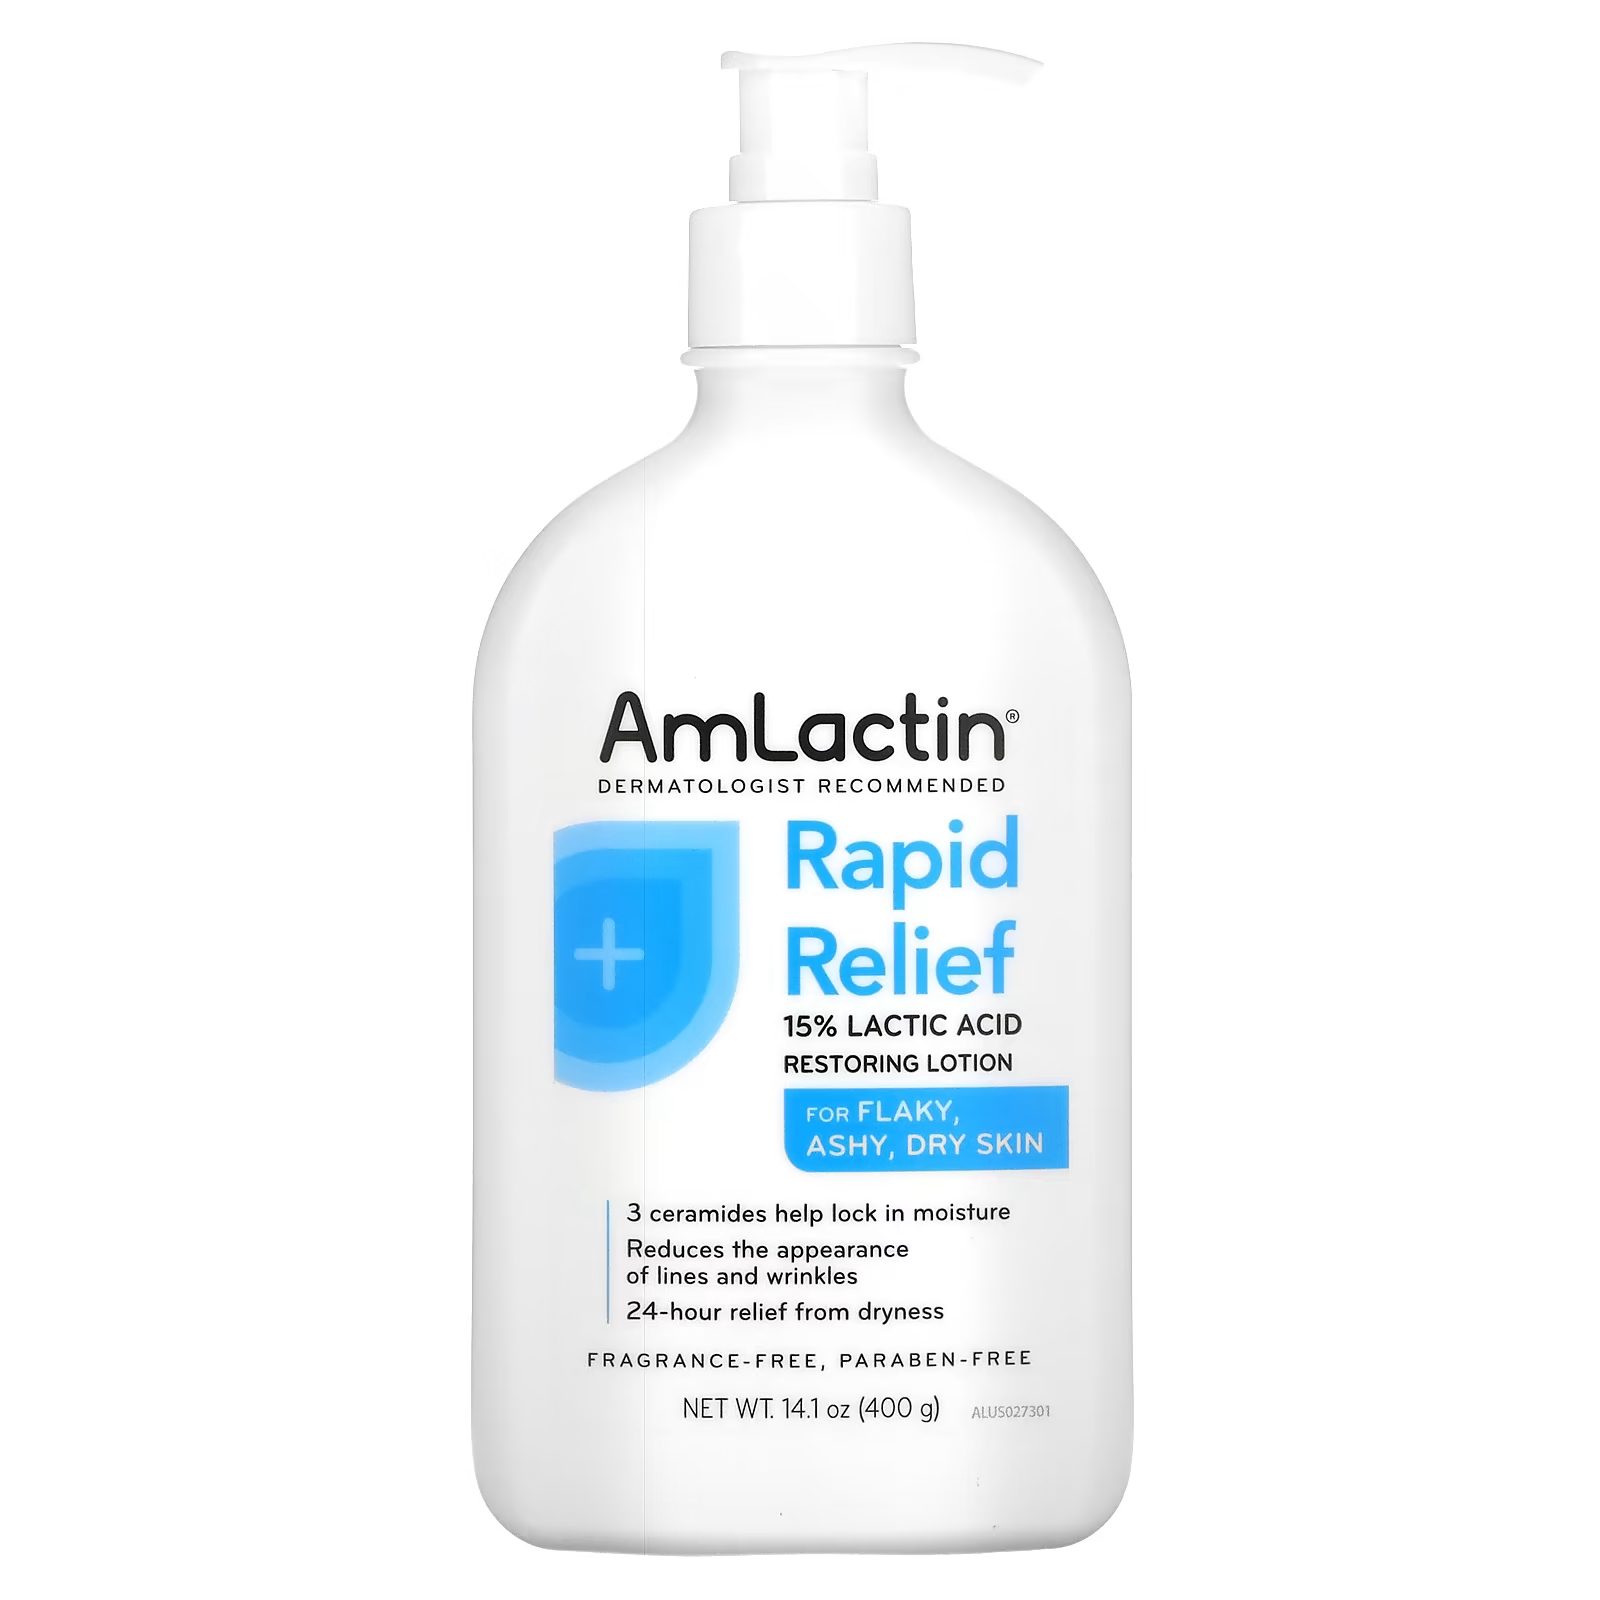 Лосьон восстанавливающий AmLactin Rapid Relief без ароматизатора, 400 г amlactin rapid relief восстанавливающий лосьон для кожи без отдушки 400 г 14 1 унции